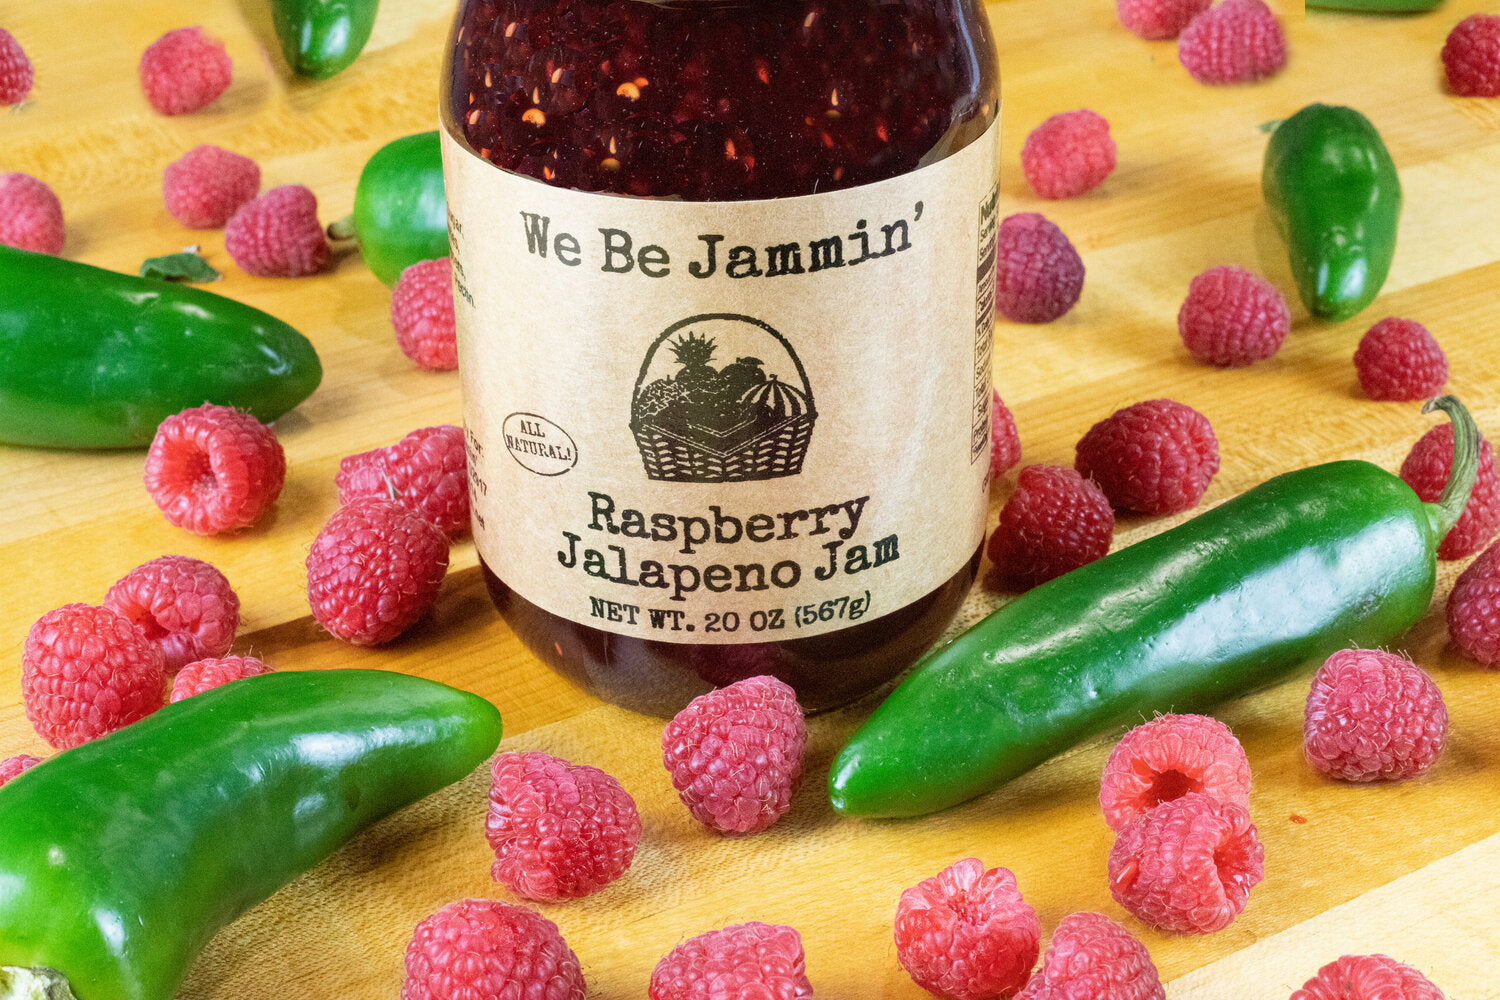 We Be Jammin’ Raspberry Jalapeño Jam